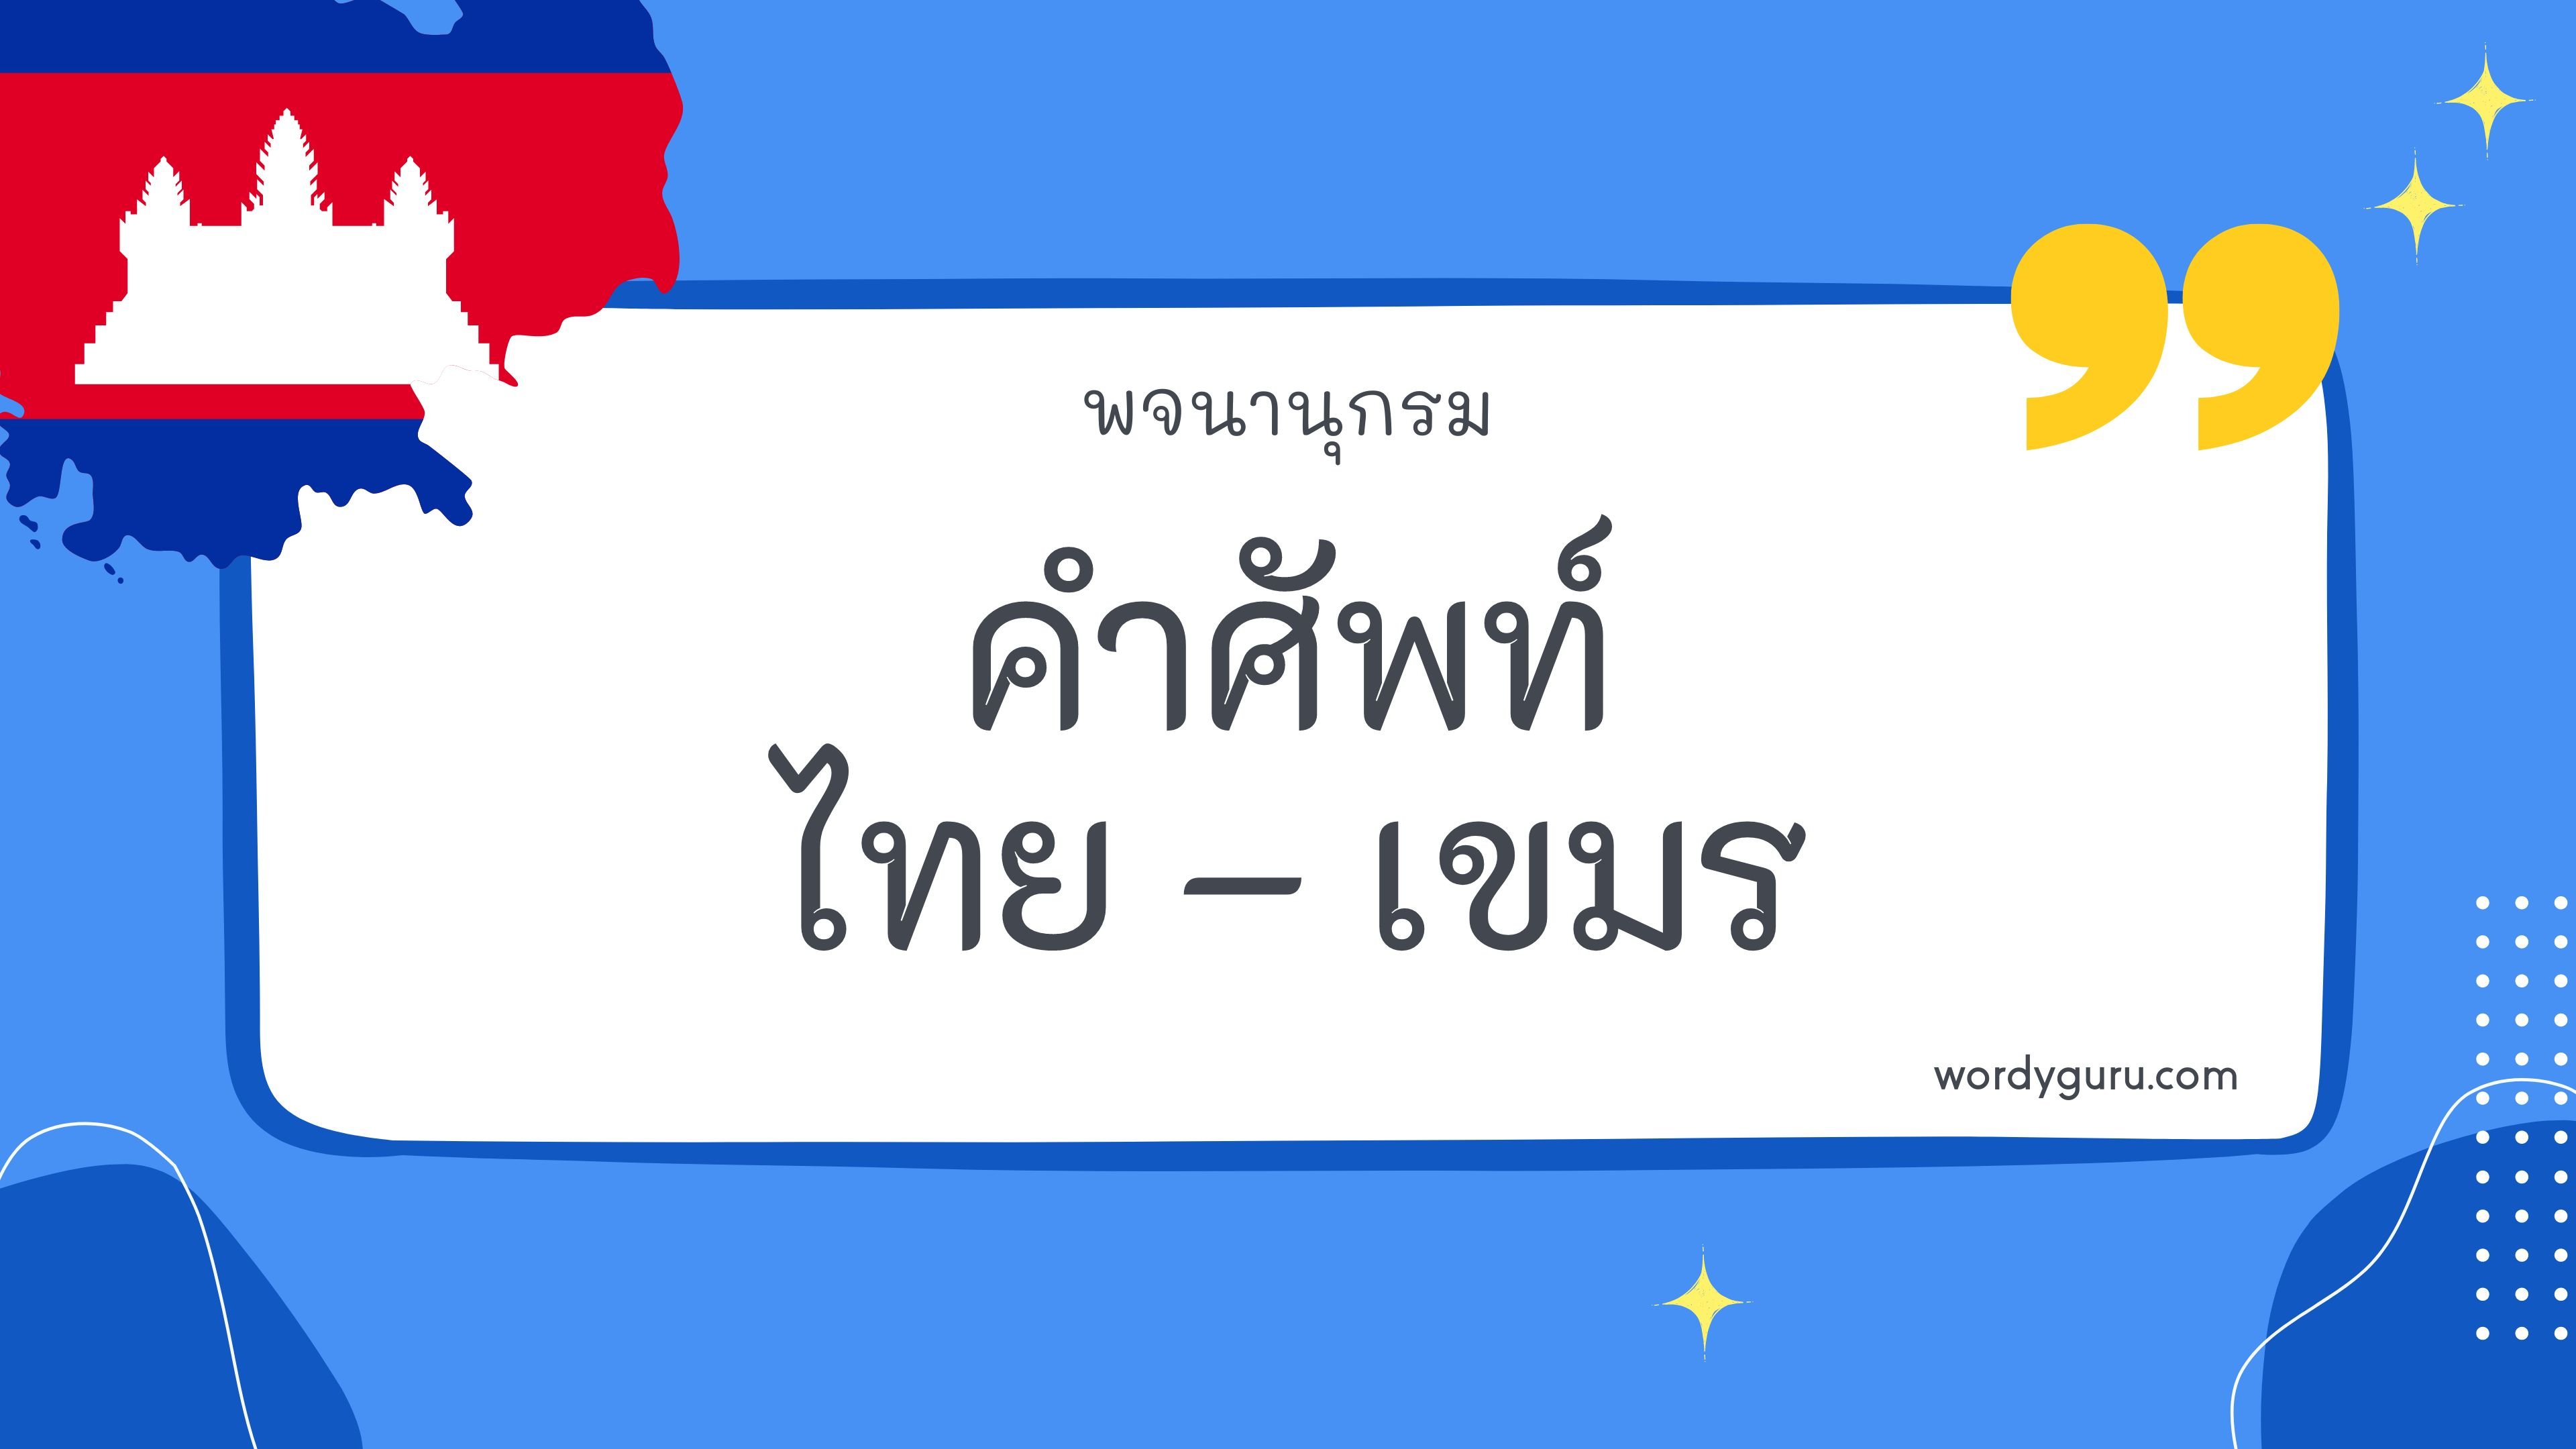 คำศัพท์ไทย – เขมร รวม 50 คำศัพท์ภาษาไทย - เขมร ที่ใช้บ่อย มาทำการเรียนรู้กัน จะมีคำไหนที่เรารู้จักไหมนะ ไปดูกันเลย